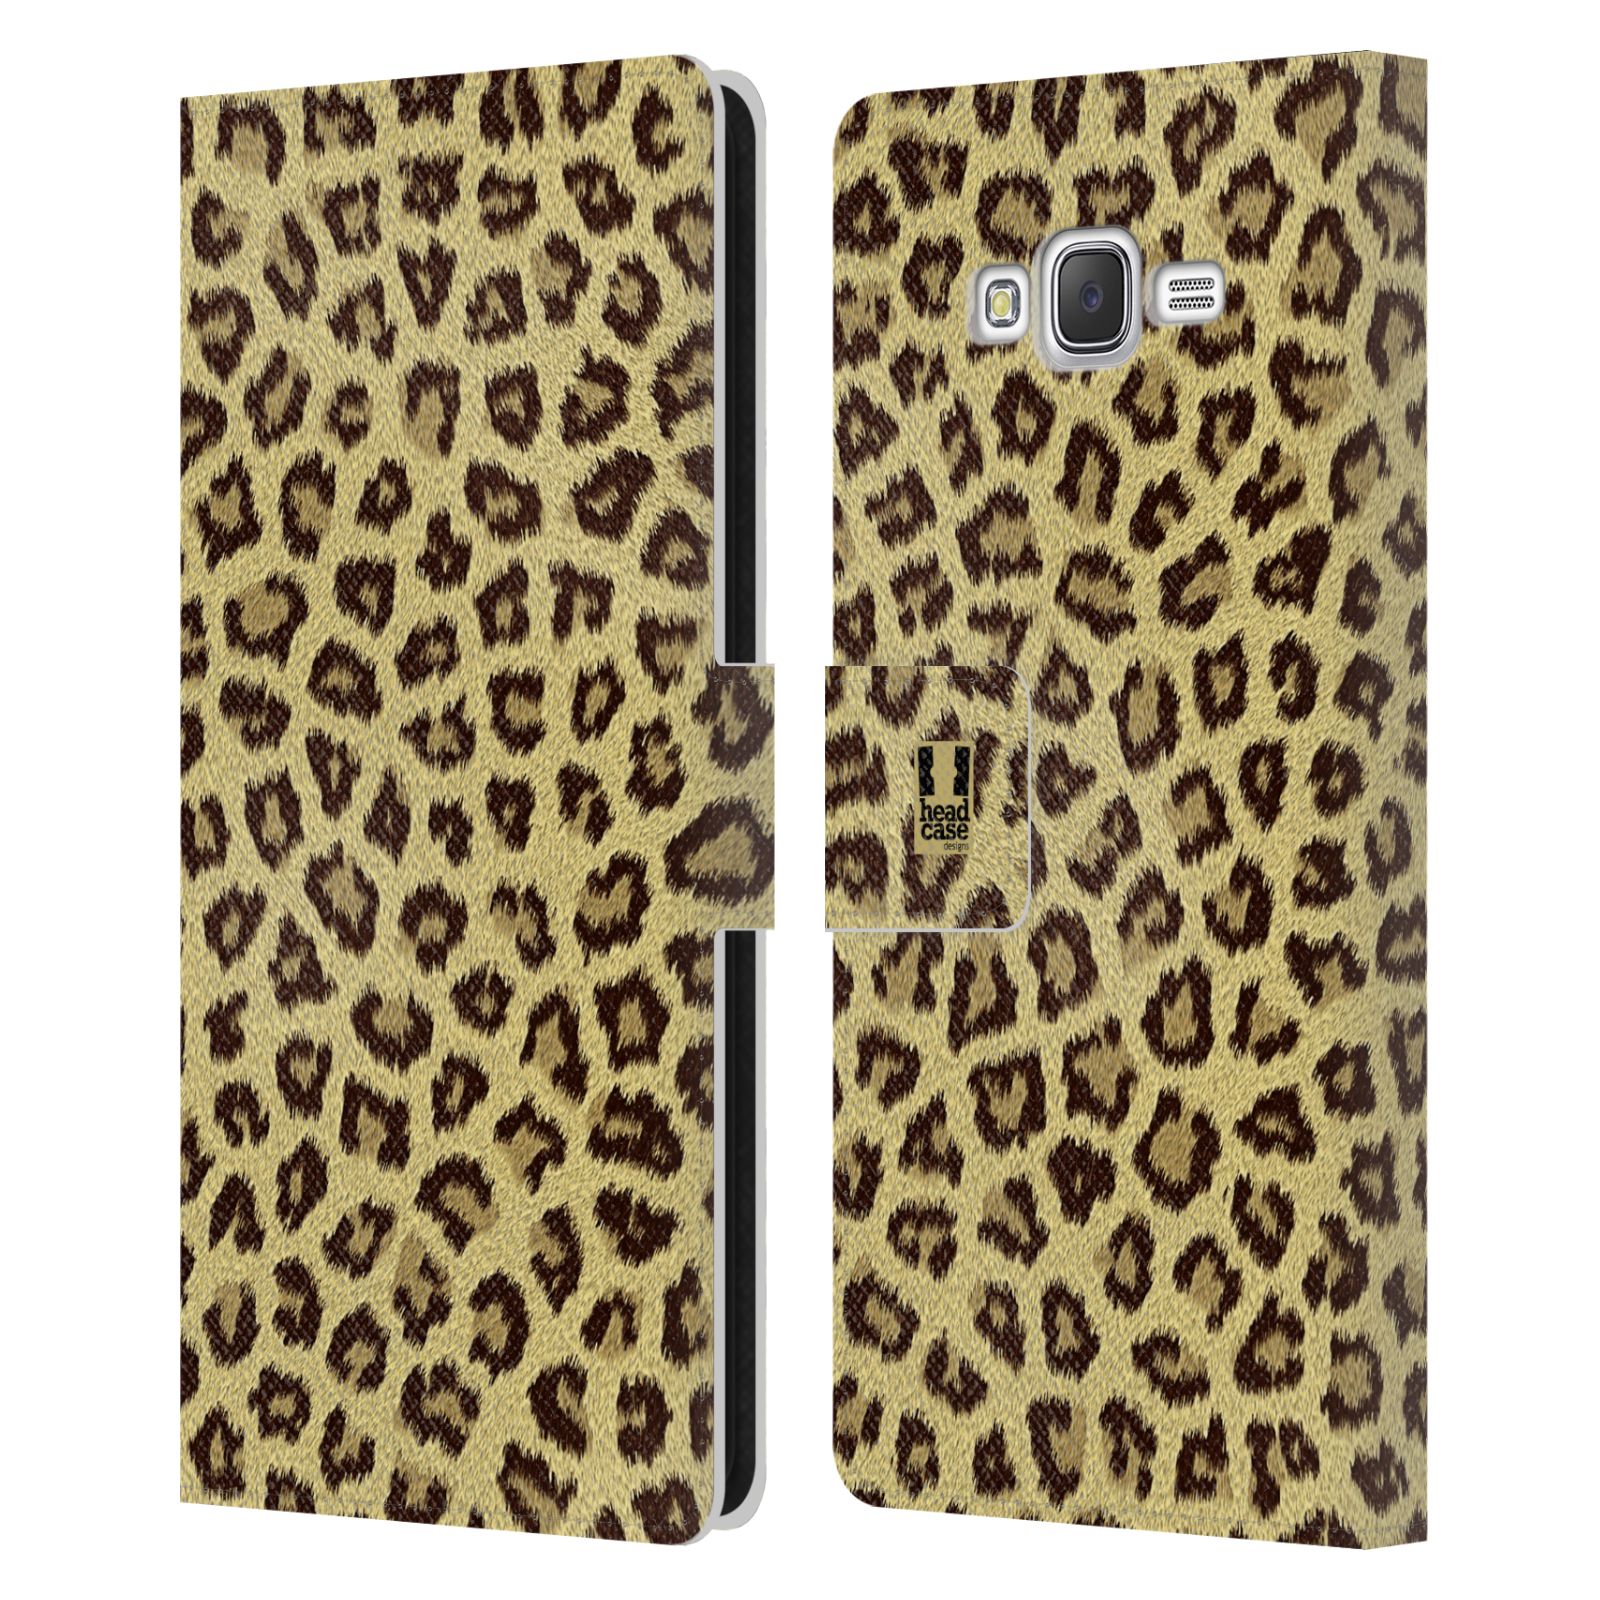 HEAD CASE Flipové pouzdro pro mobil Samsung Galaxy J7, J700 zvíře srst divoká kolekce jaguár, gepard